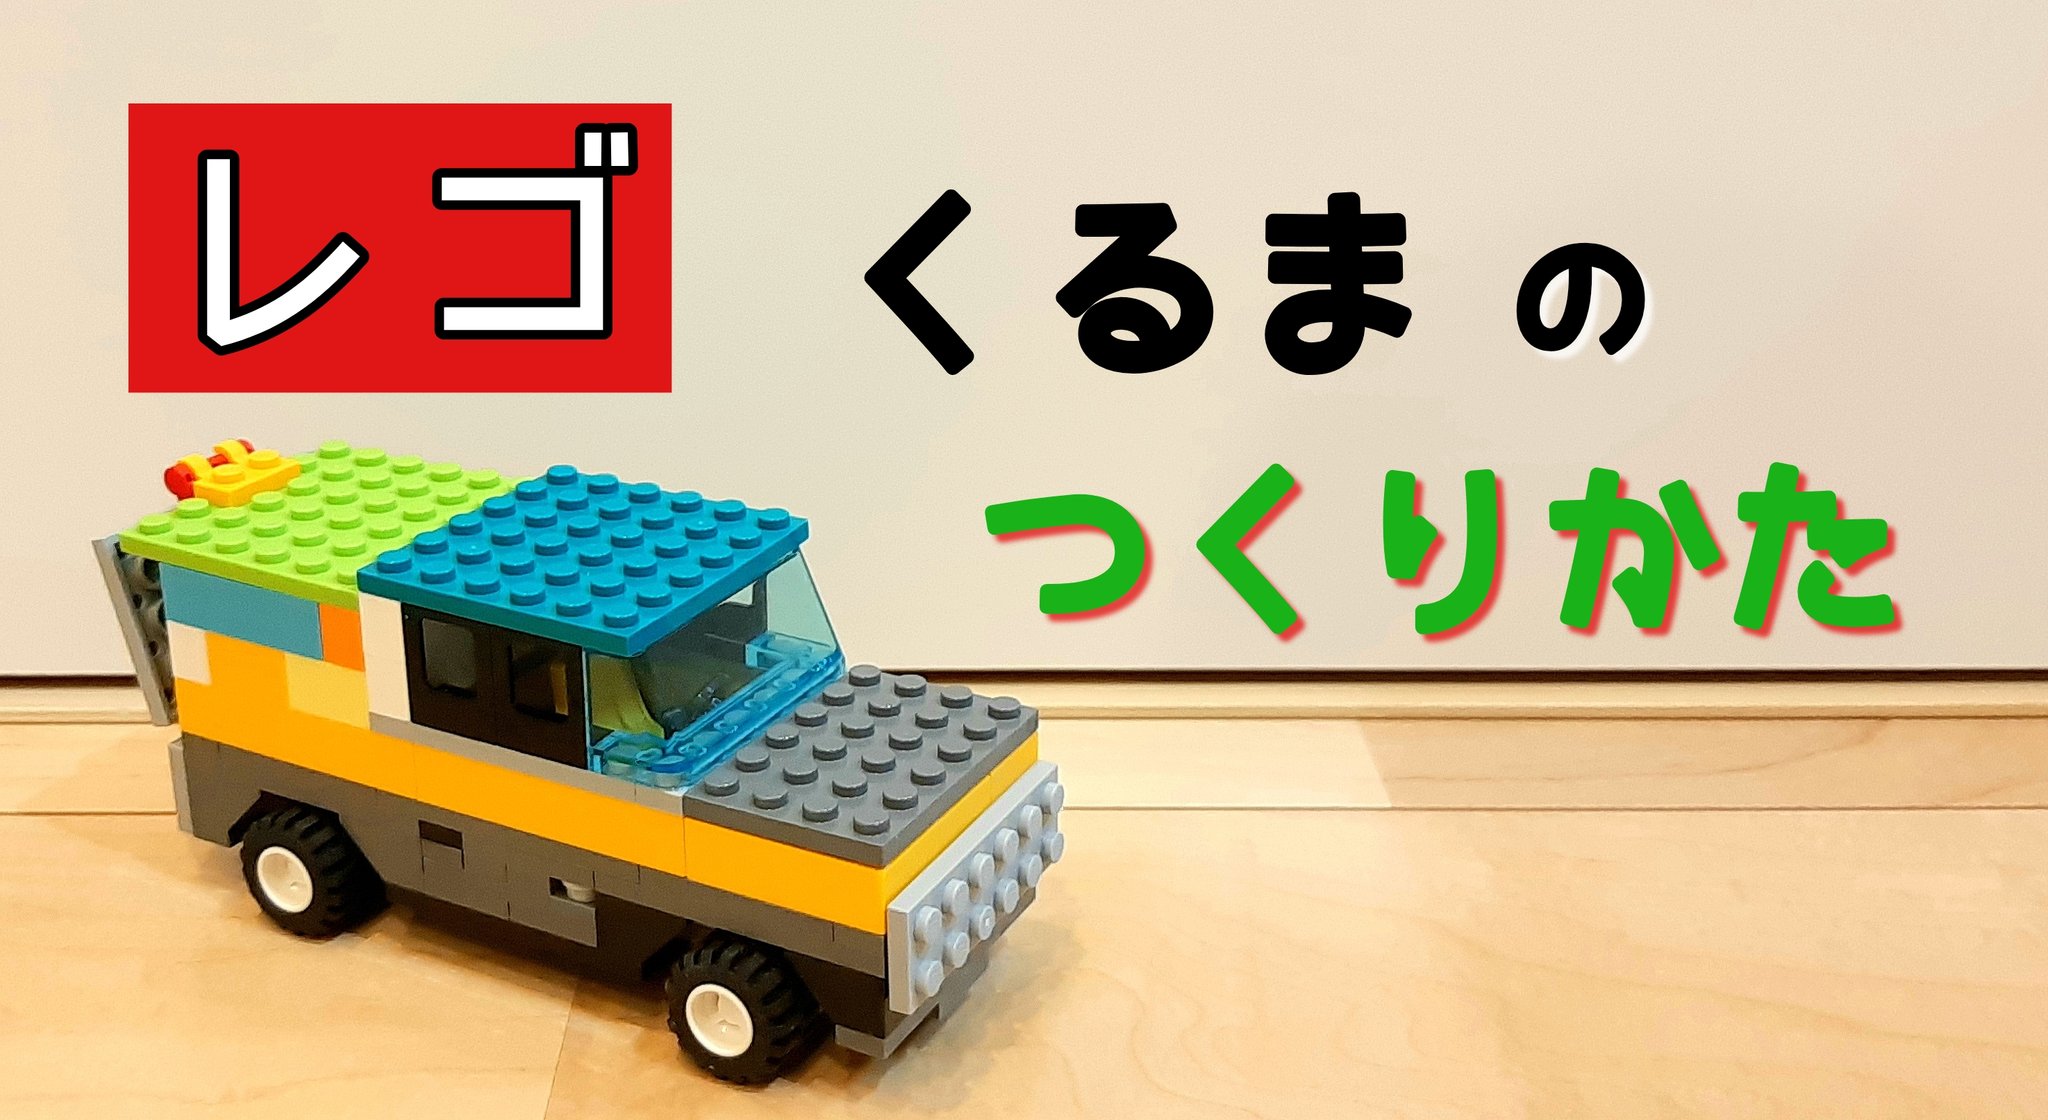 そうしのレゴチャンネル T Co Gsgdix9owr レゴ 車の作り方を6歳幼稚園児が教えます トランクつき Lego トラック 乗り物 How To Build A Truck Original レゴ Lego レゴ作品 おもちゃ 6歳 車 レゴの車 Car Kids Legolife Legofan